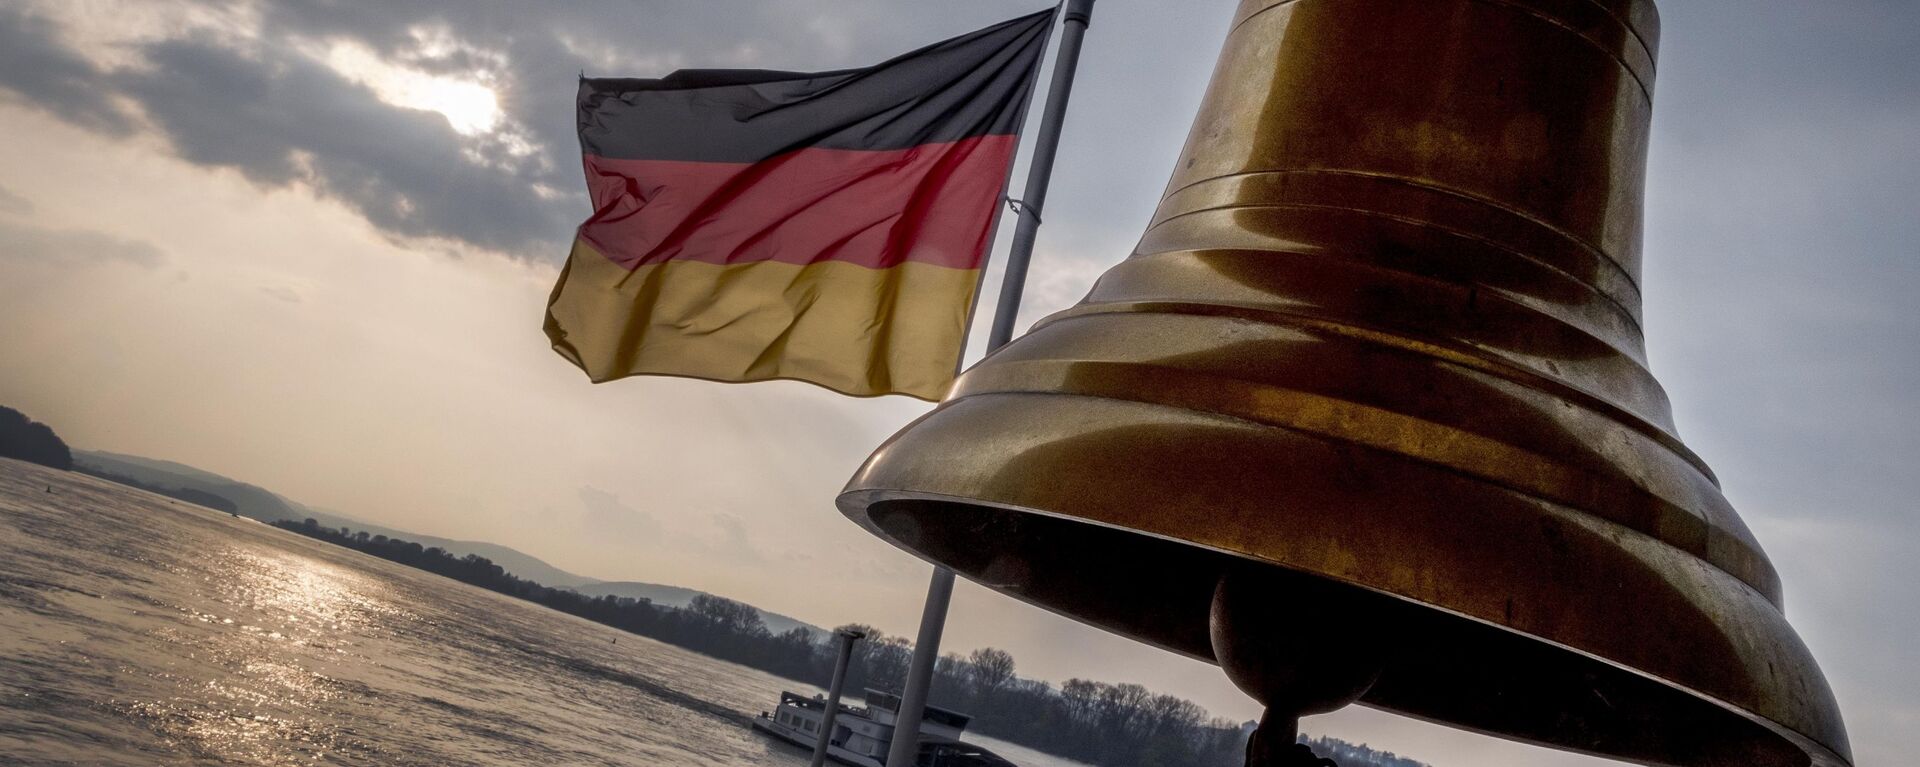 Немачка застава на горњој палуби малог трајекта на реци Рајни у близини Руедешејма у Немачкој - Sputnik Србија, 1920, 20.09.2021